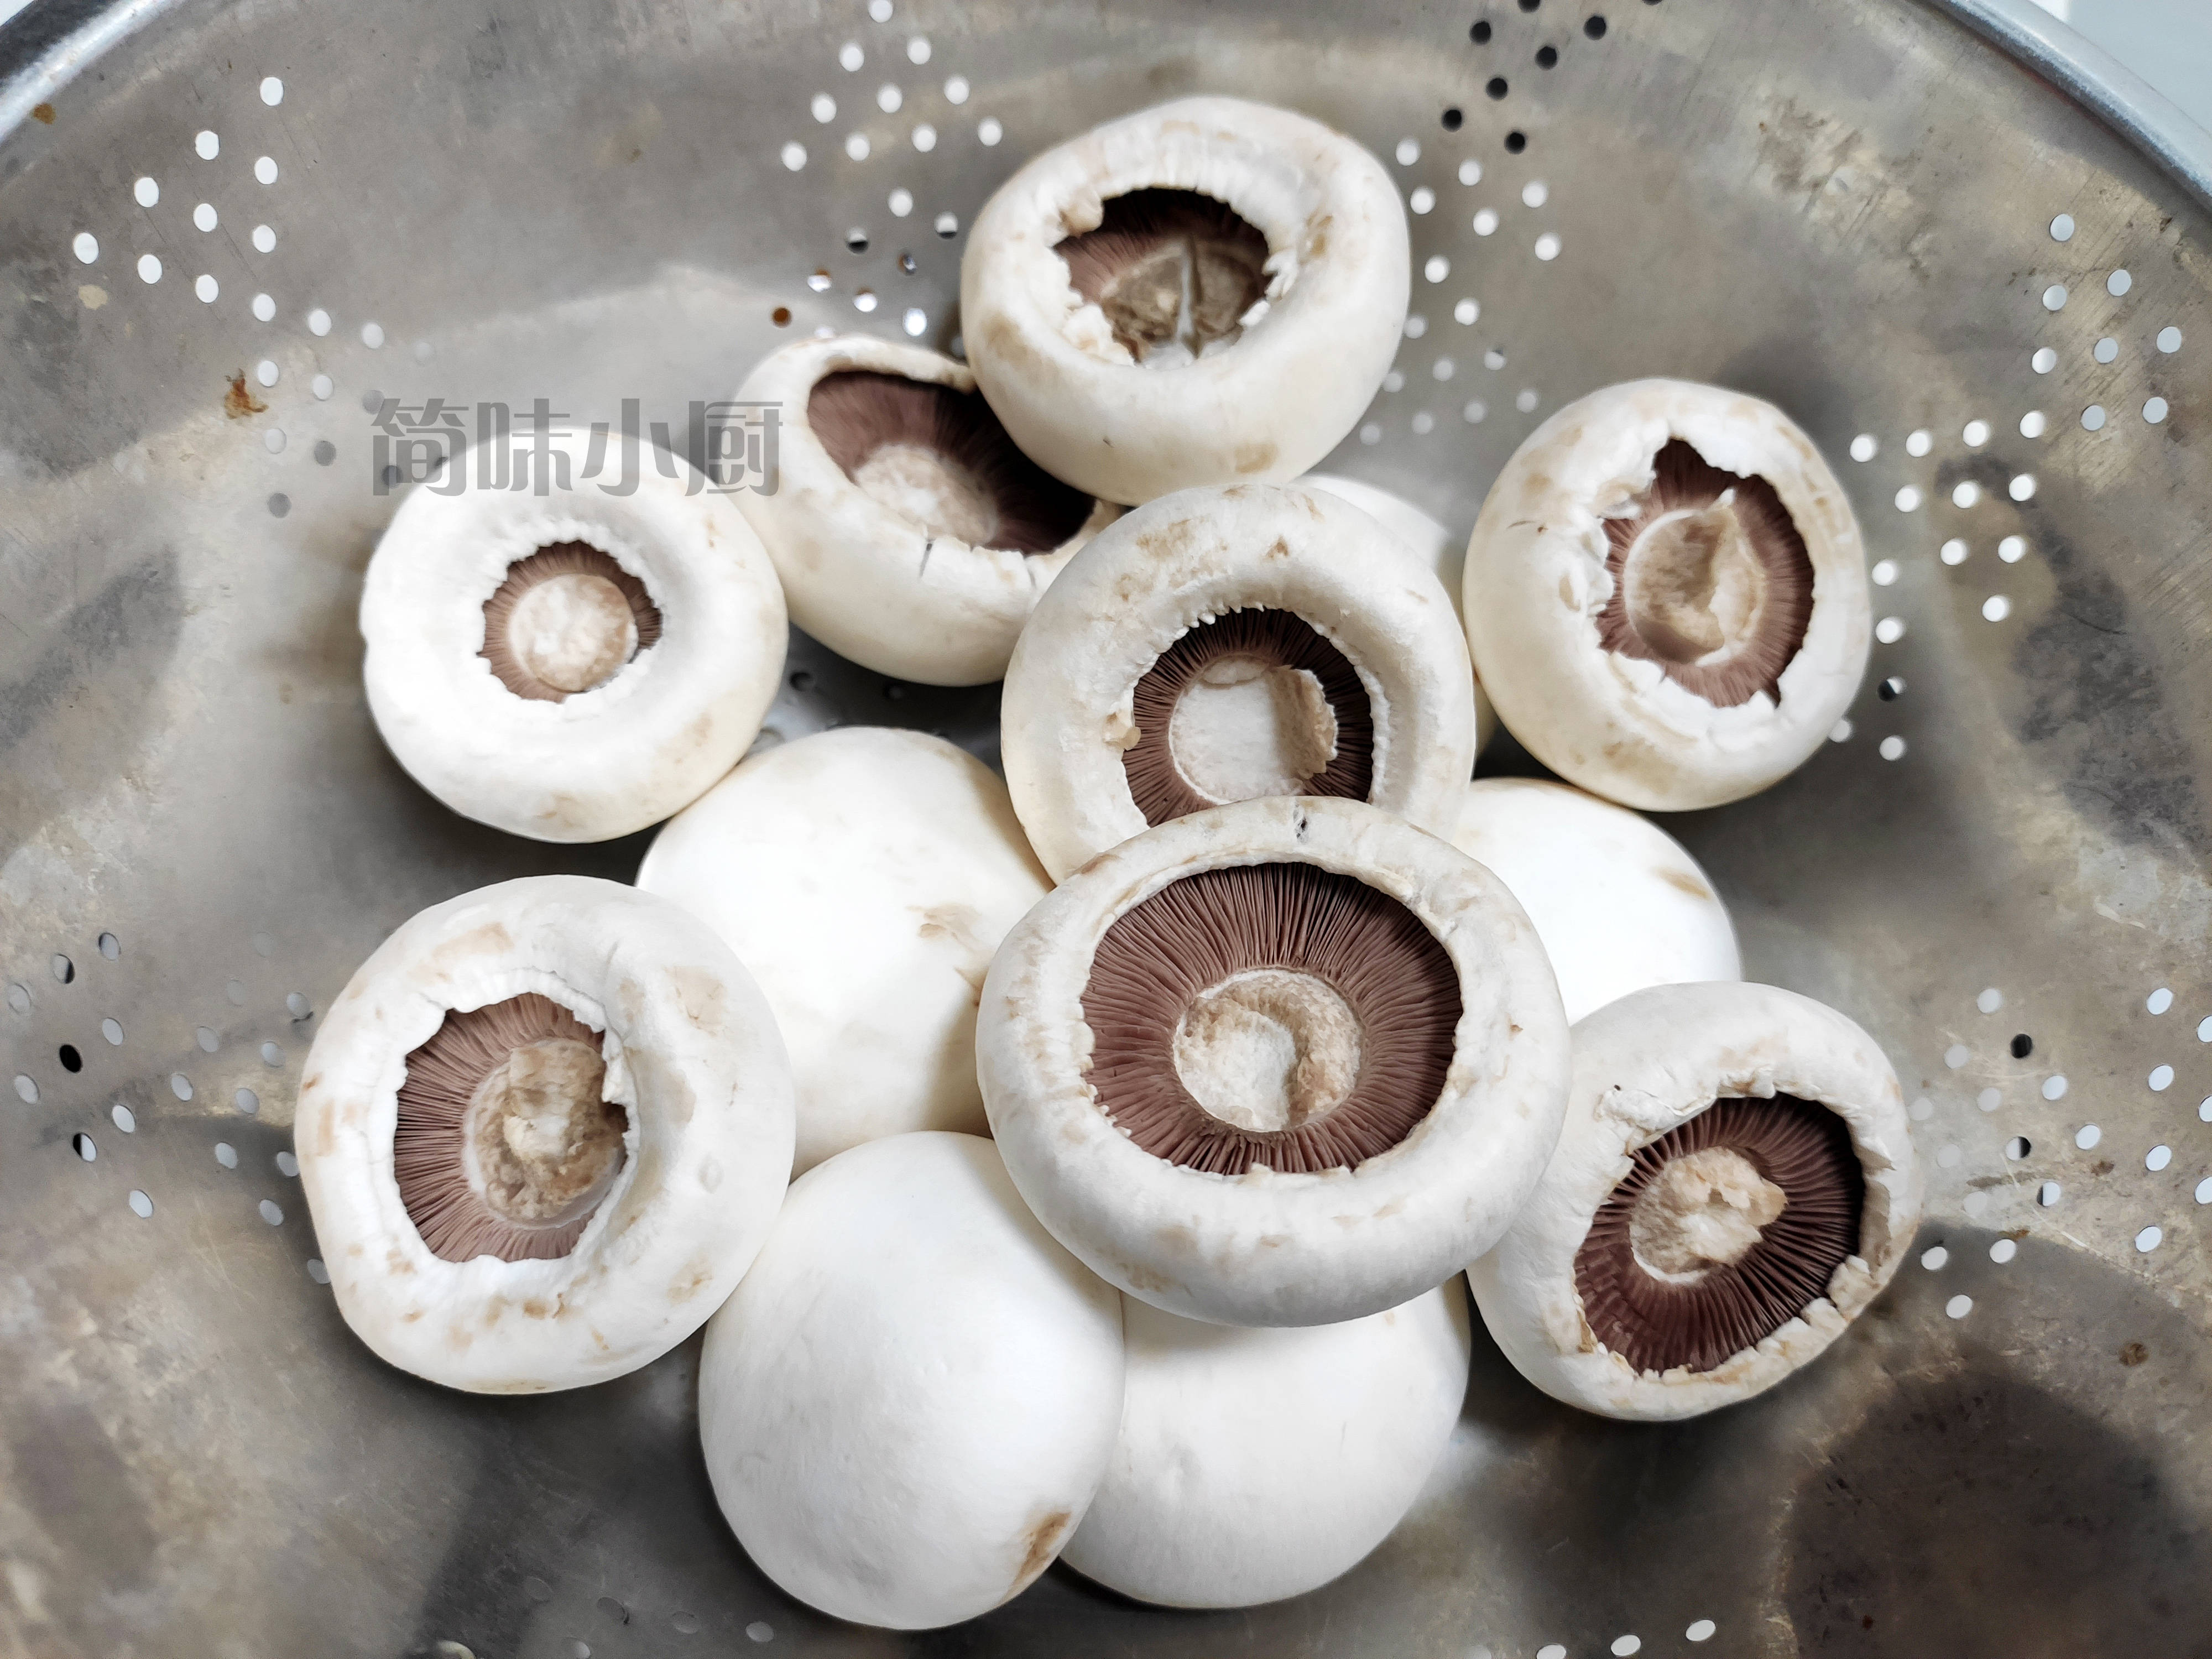 港式煎让口蘑菇鲜美之味看得见